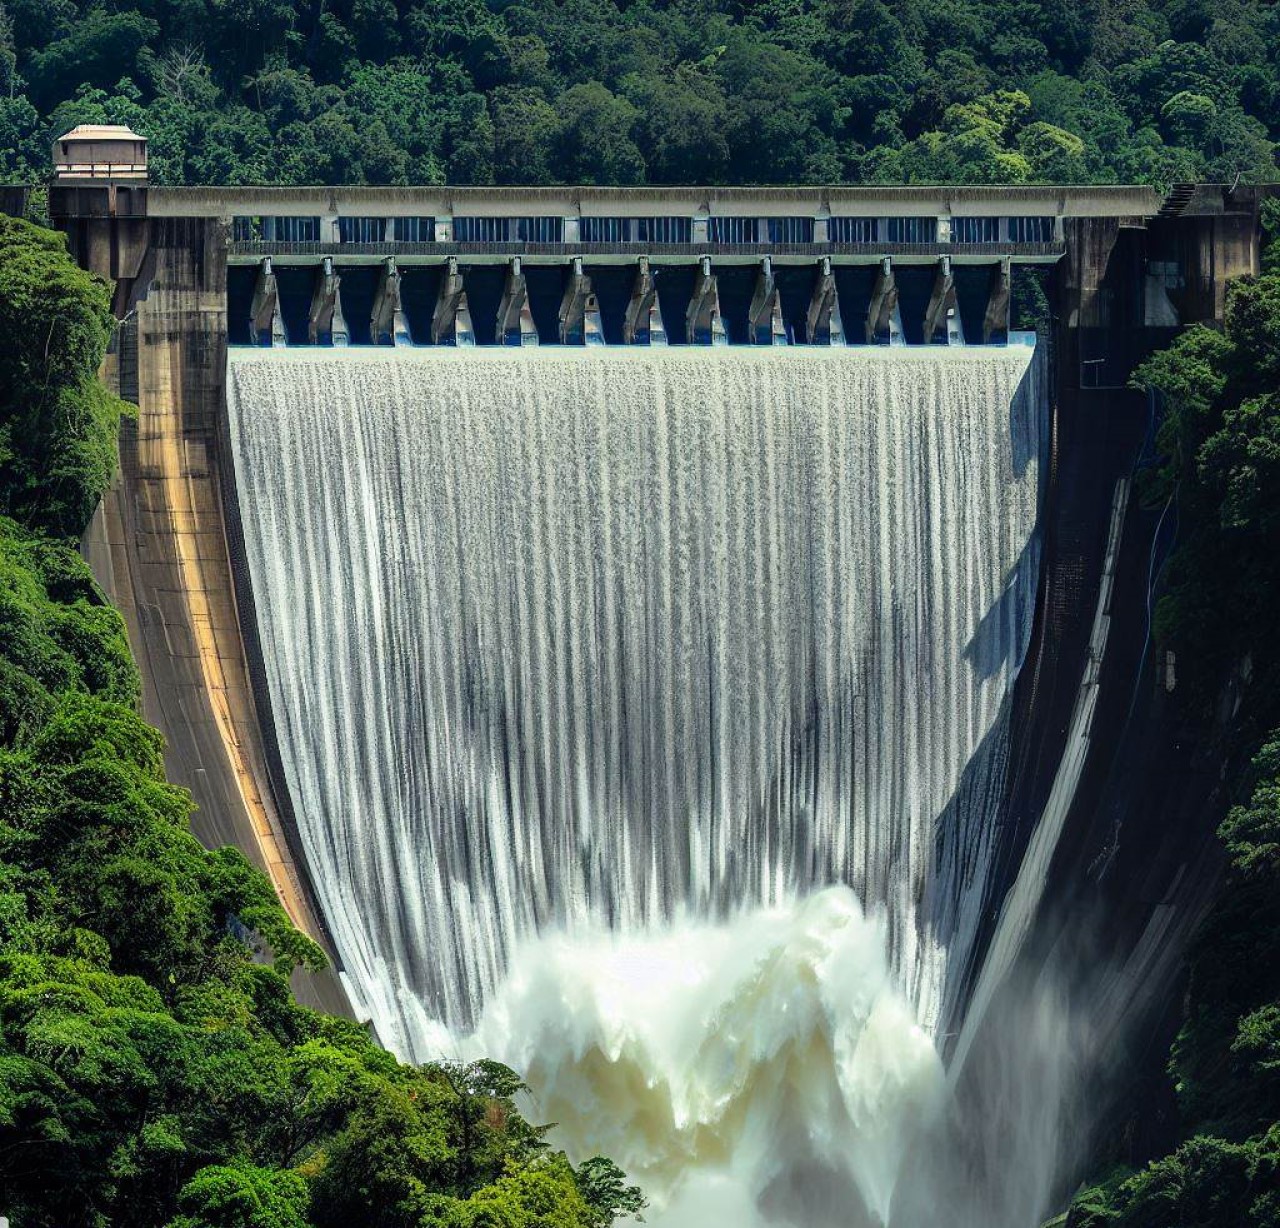 La grandeza de una represa hidroeléctrica, con agua cayendo en cascada por un aliviadero.